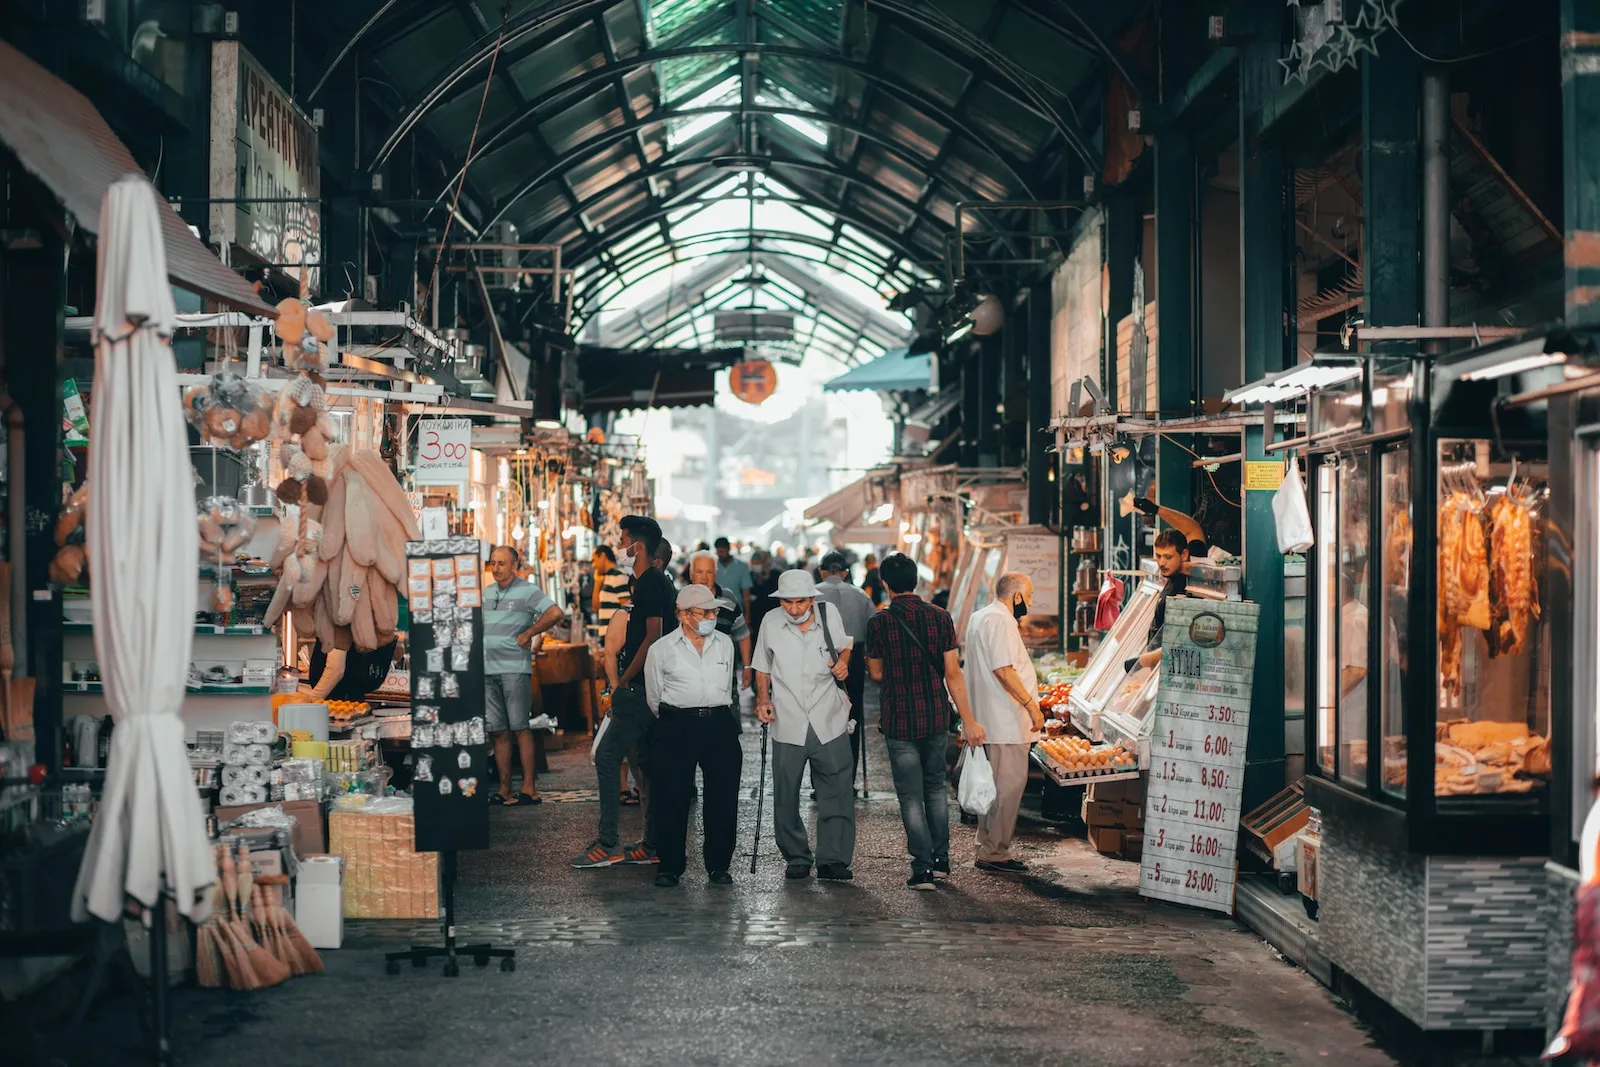 Una fotografia vivida del Mercato Kapani, un mercato tradizionale di Salonicco che ha servito la comunità locale con una vasta gamma di prodotti sin dai tempi dell'occupazione ottomana. Photo by Vianney CAHEN